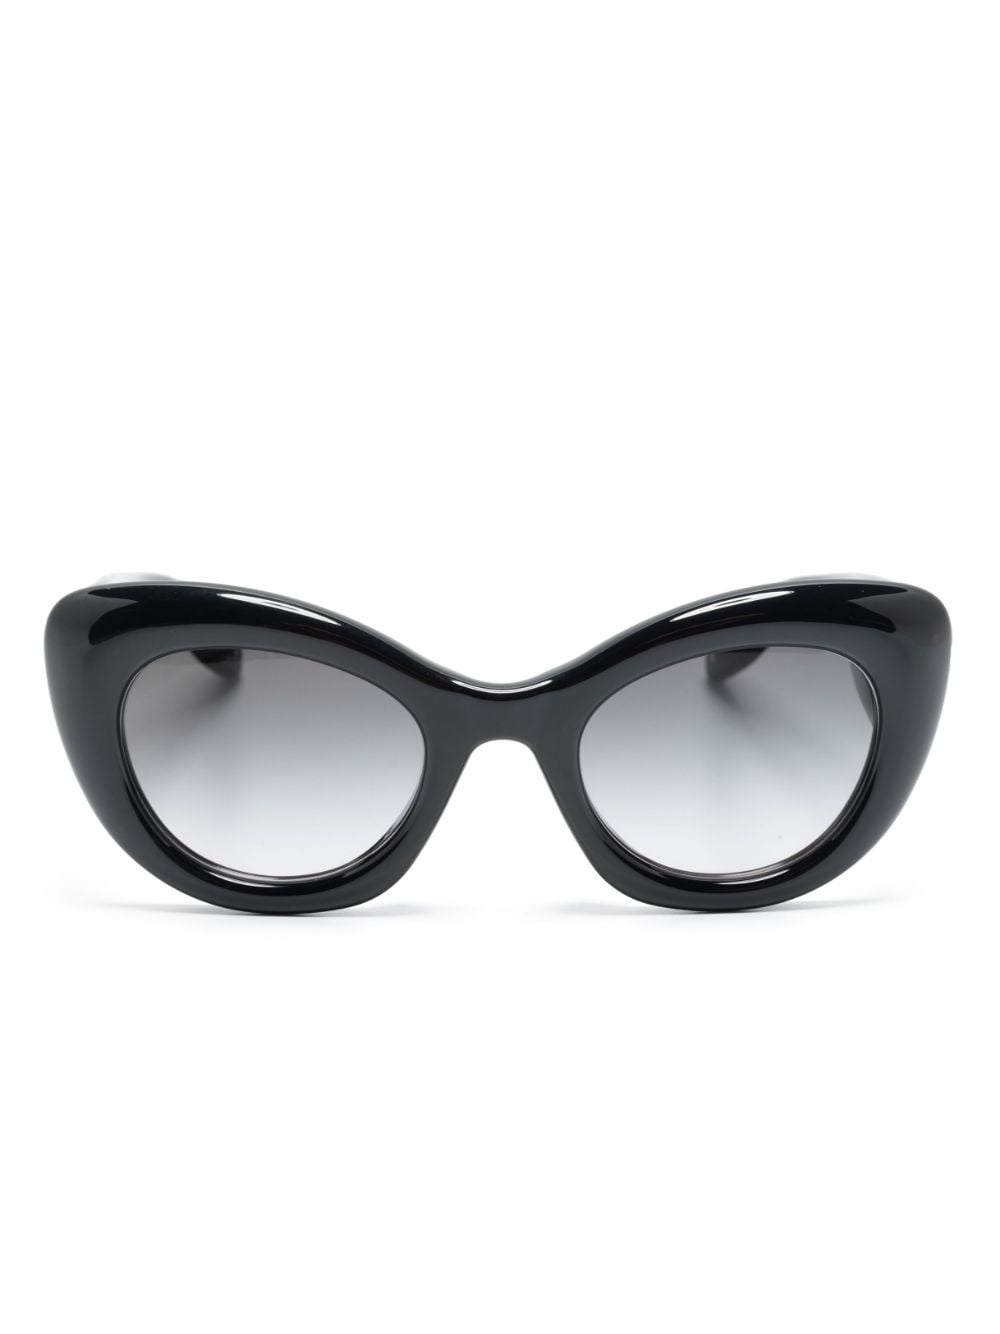 Alexander McQueen Eyewear Sonnenbrille mit rundem Gestell - Schwarz von Alexander McQueen Eyewear